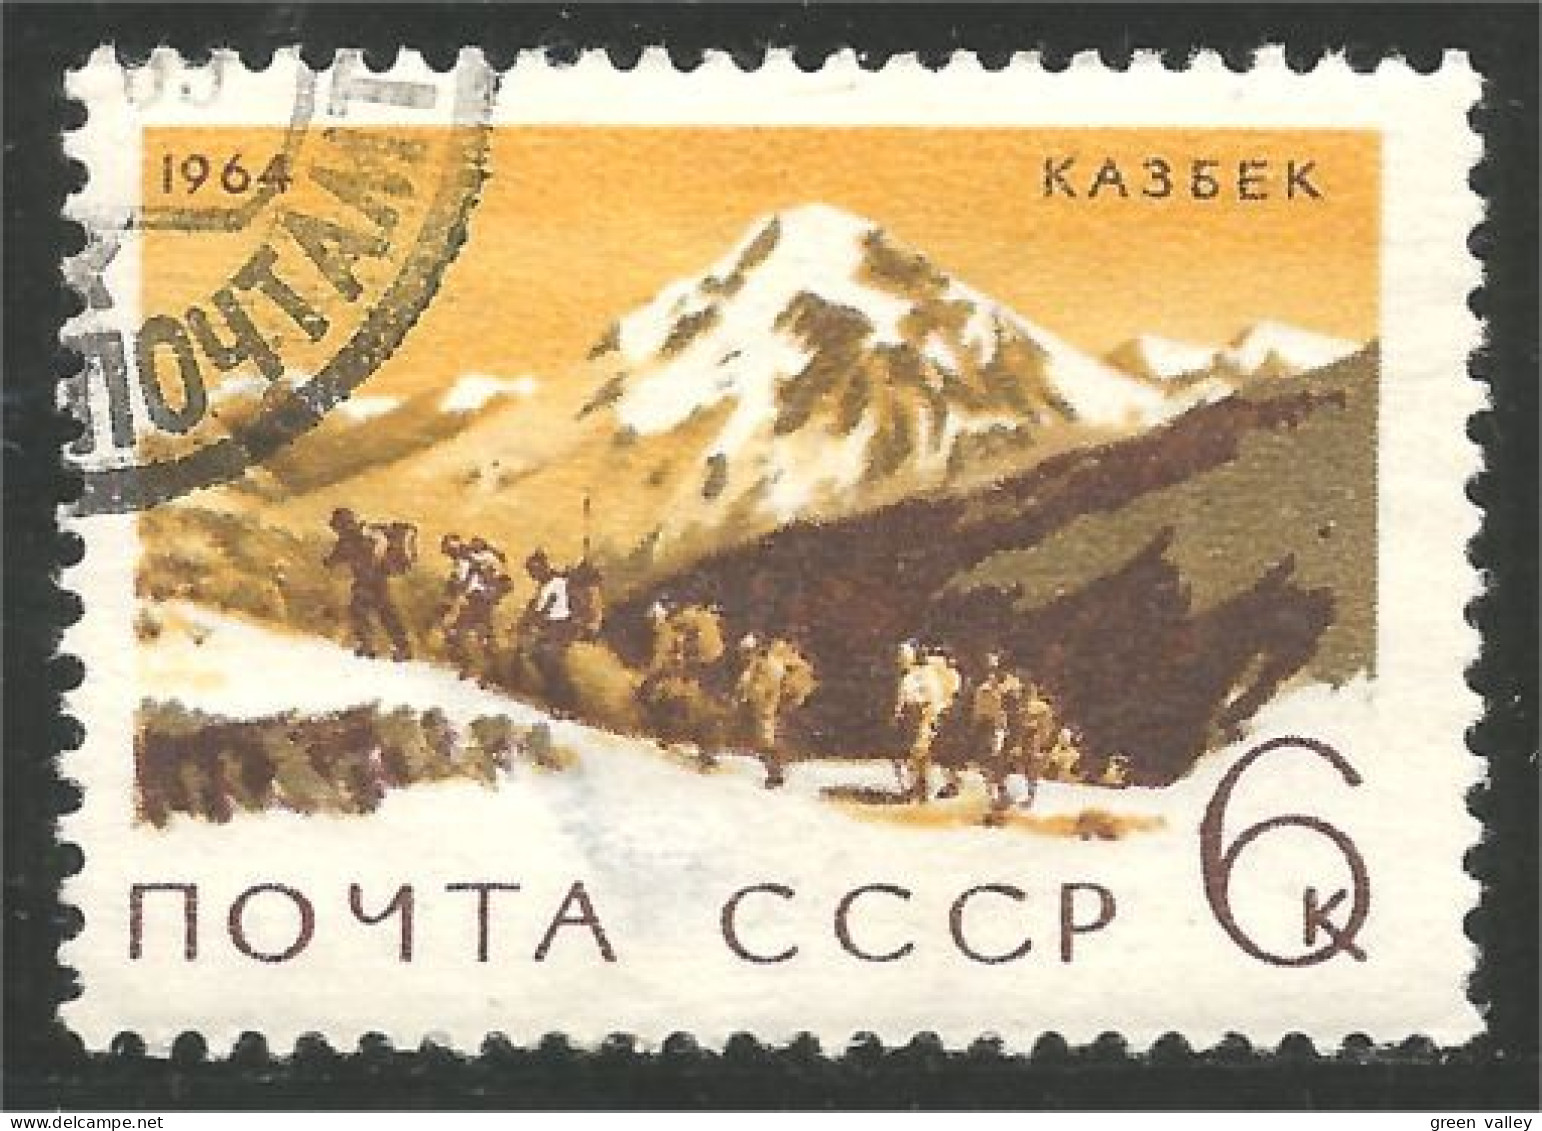 773 Russie Escalade Mountain Climbing Randonnée Trekking (RUK-623) - Climbing